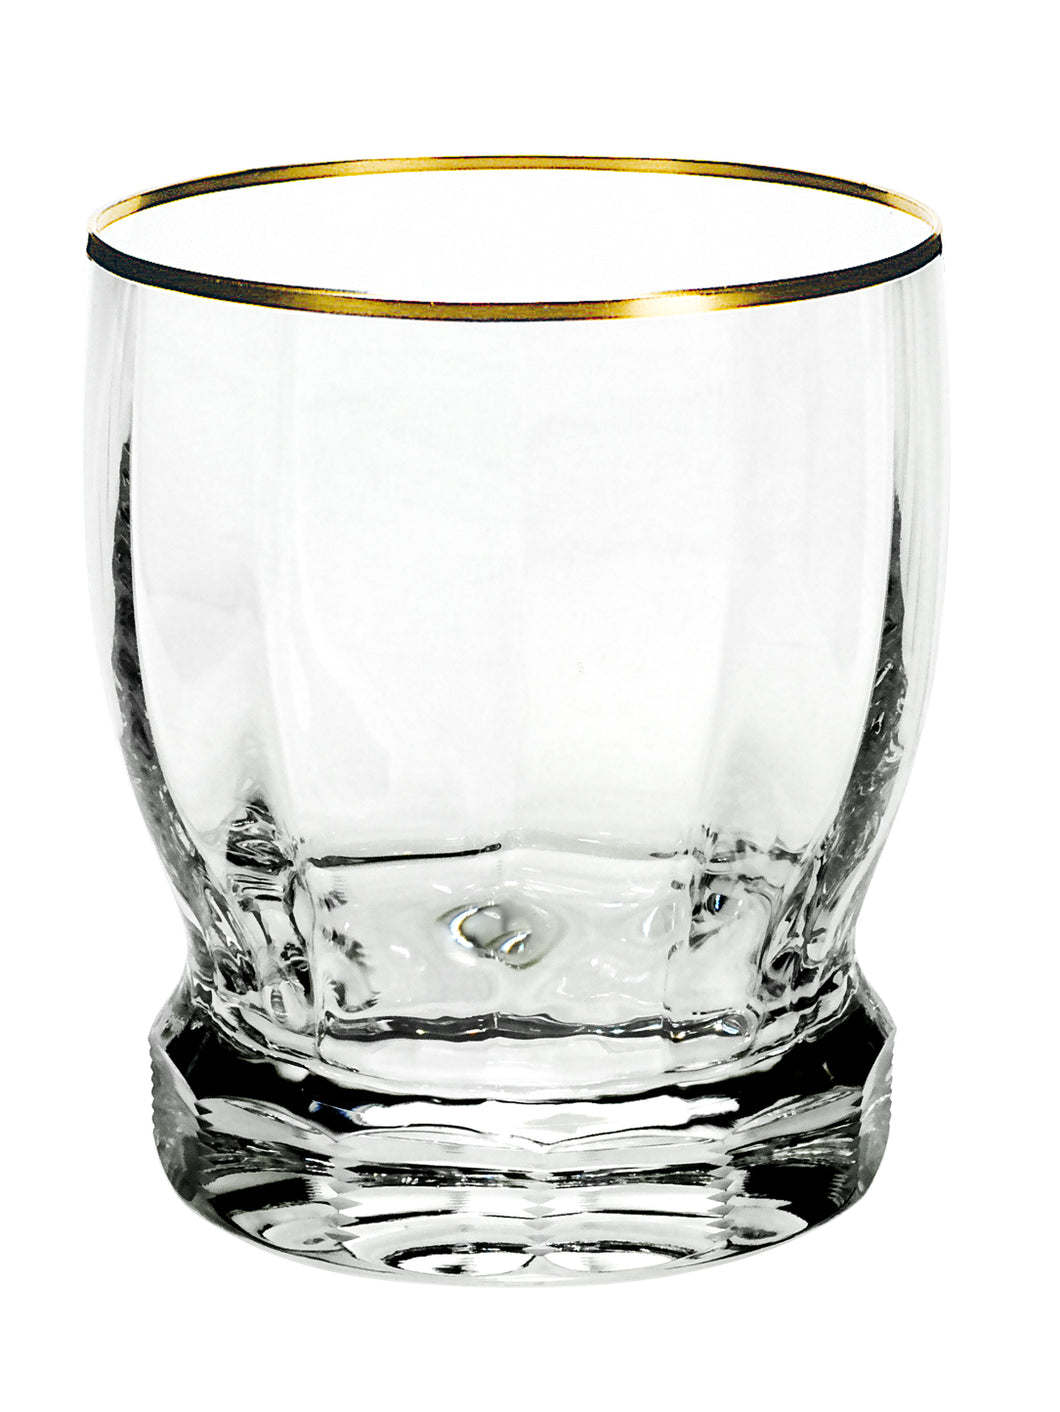 DELPHI Whisky Becher 99 mm (rundlich) - klares Glas, Flächenschliff, Eckenschliff, Goldrand